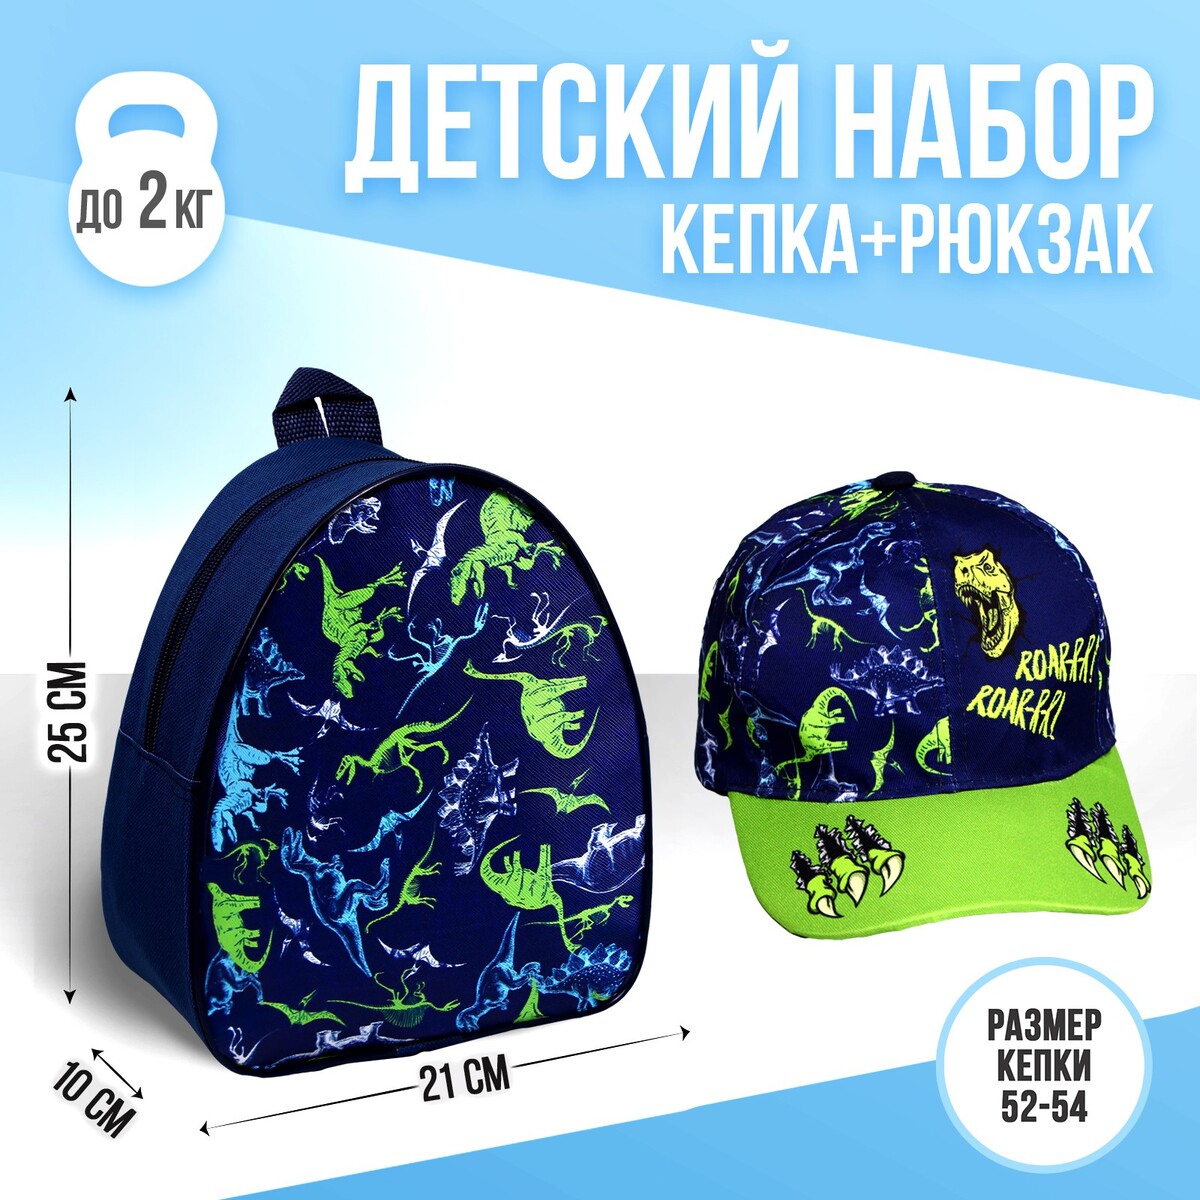 Детский набор roar, рюкзак, кепка набор из двух повязок на голову